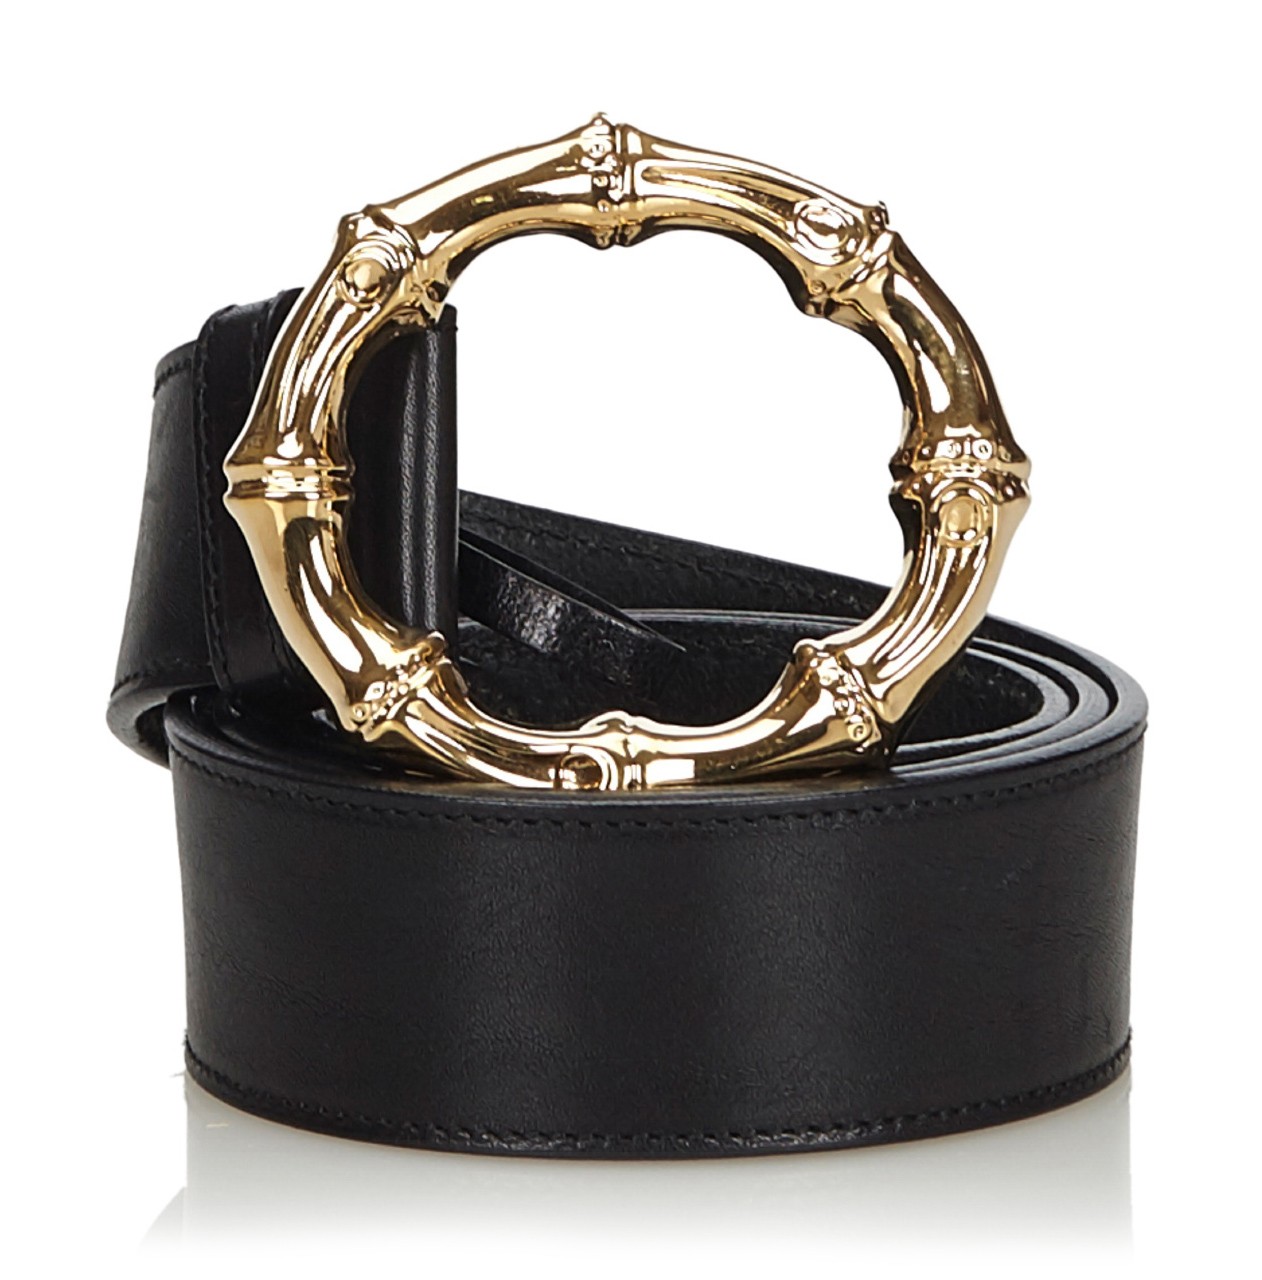 Louis Vuitton Vintage - Utah Inventeur Belt - Black Gold - Leather Belt -  Luxury High Quality - Avvenice